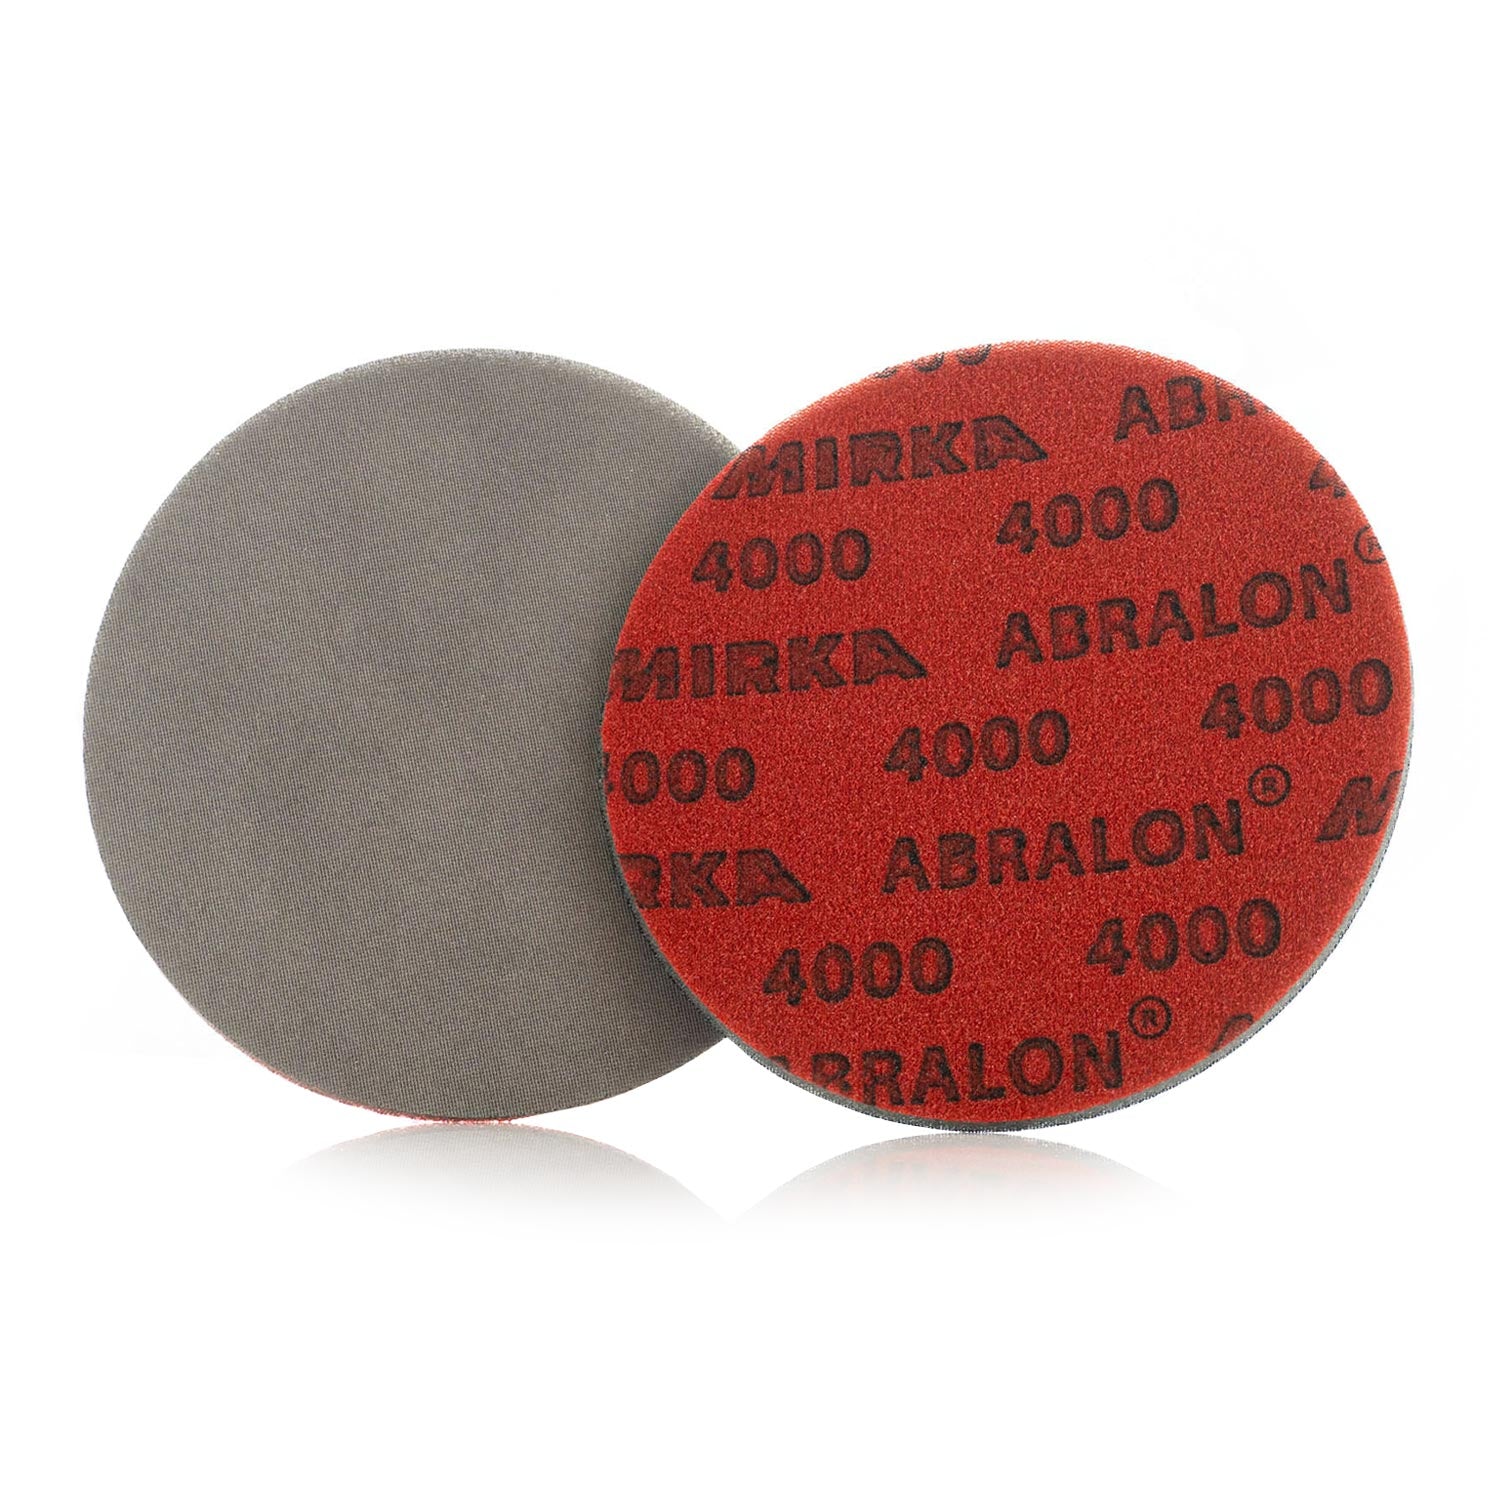 Mirka Abralon Automotive Sandpaper Discs - 4000 Grit